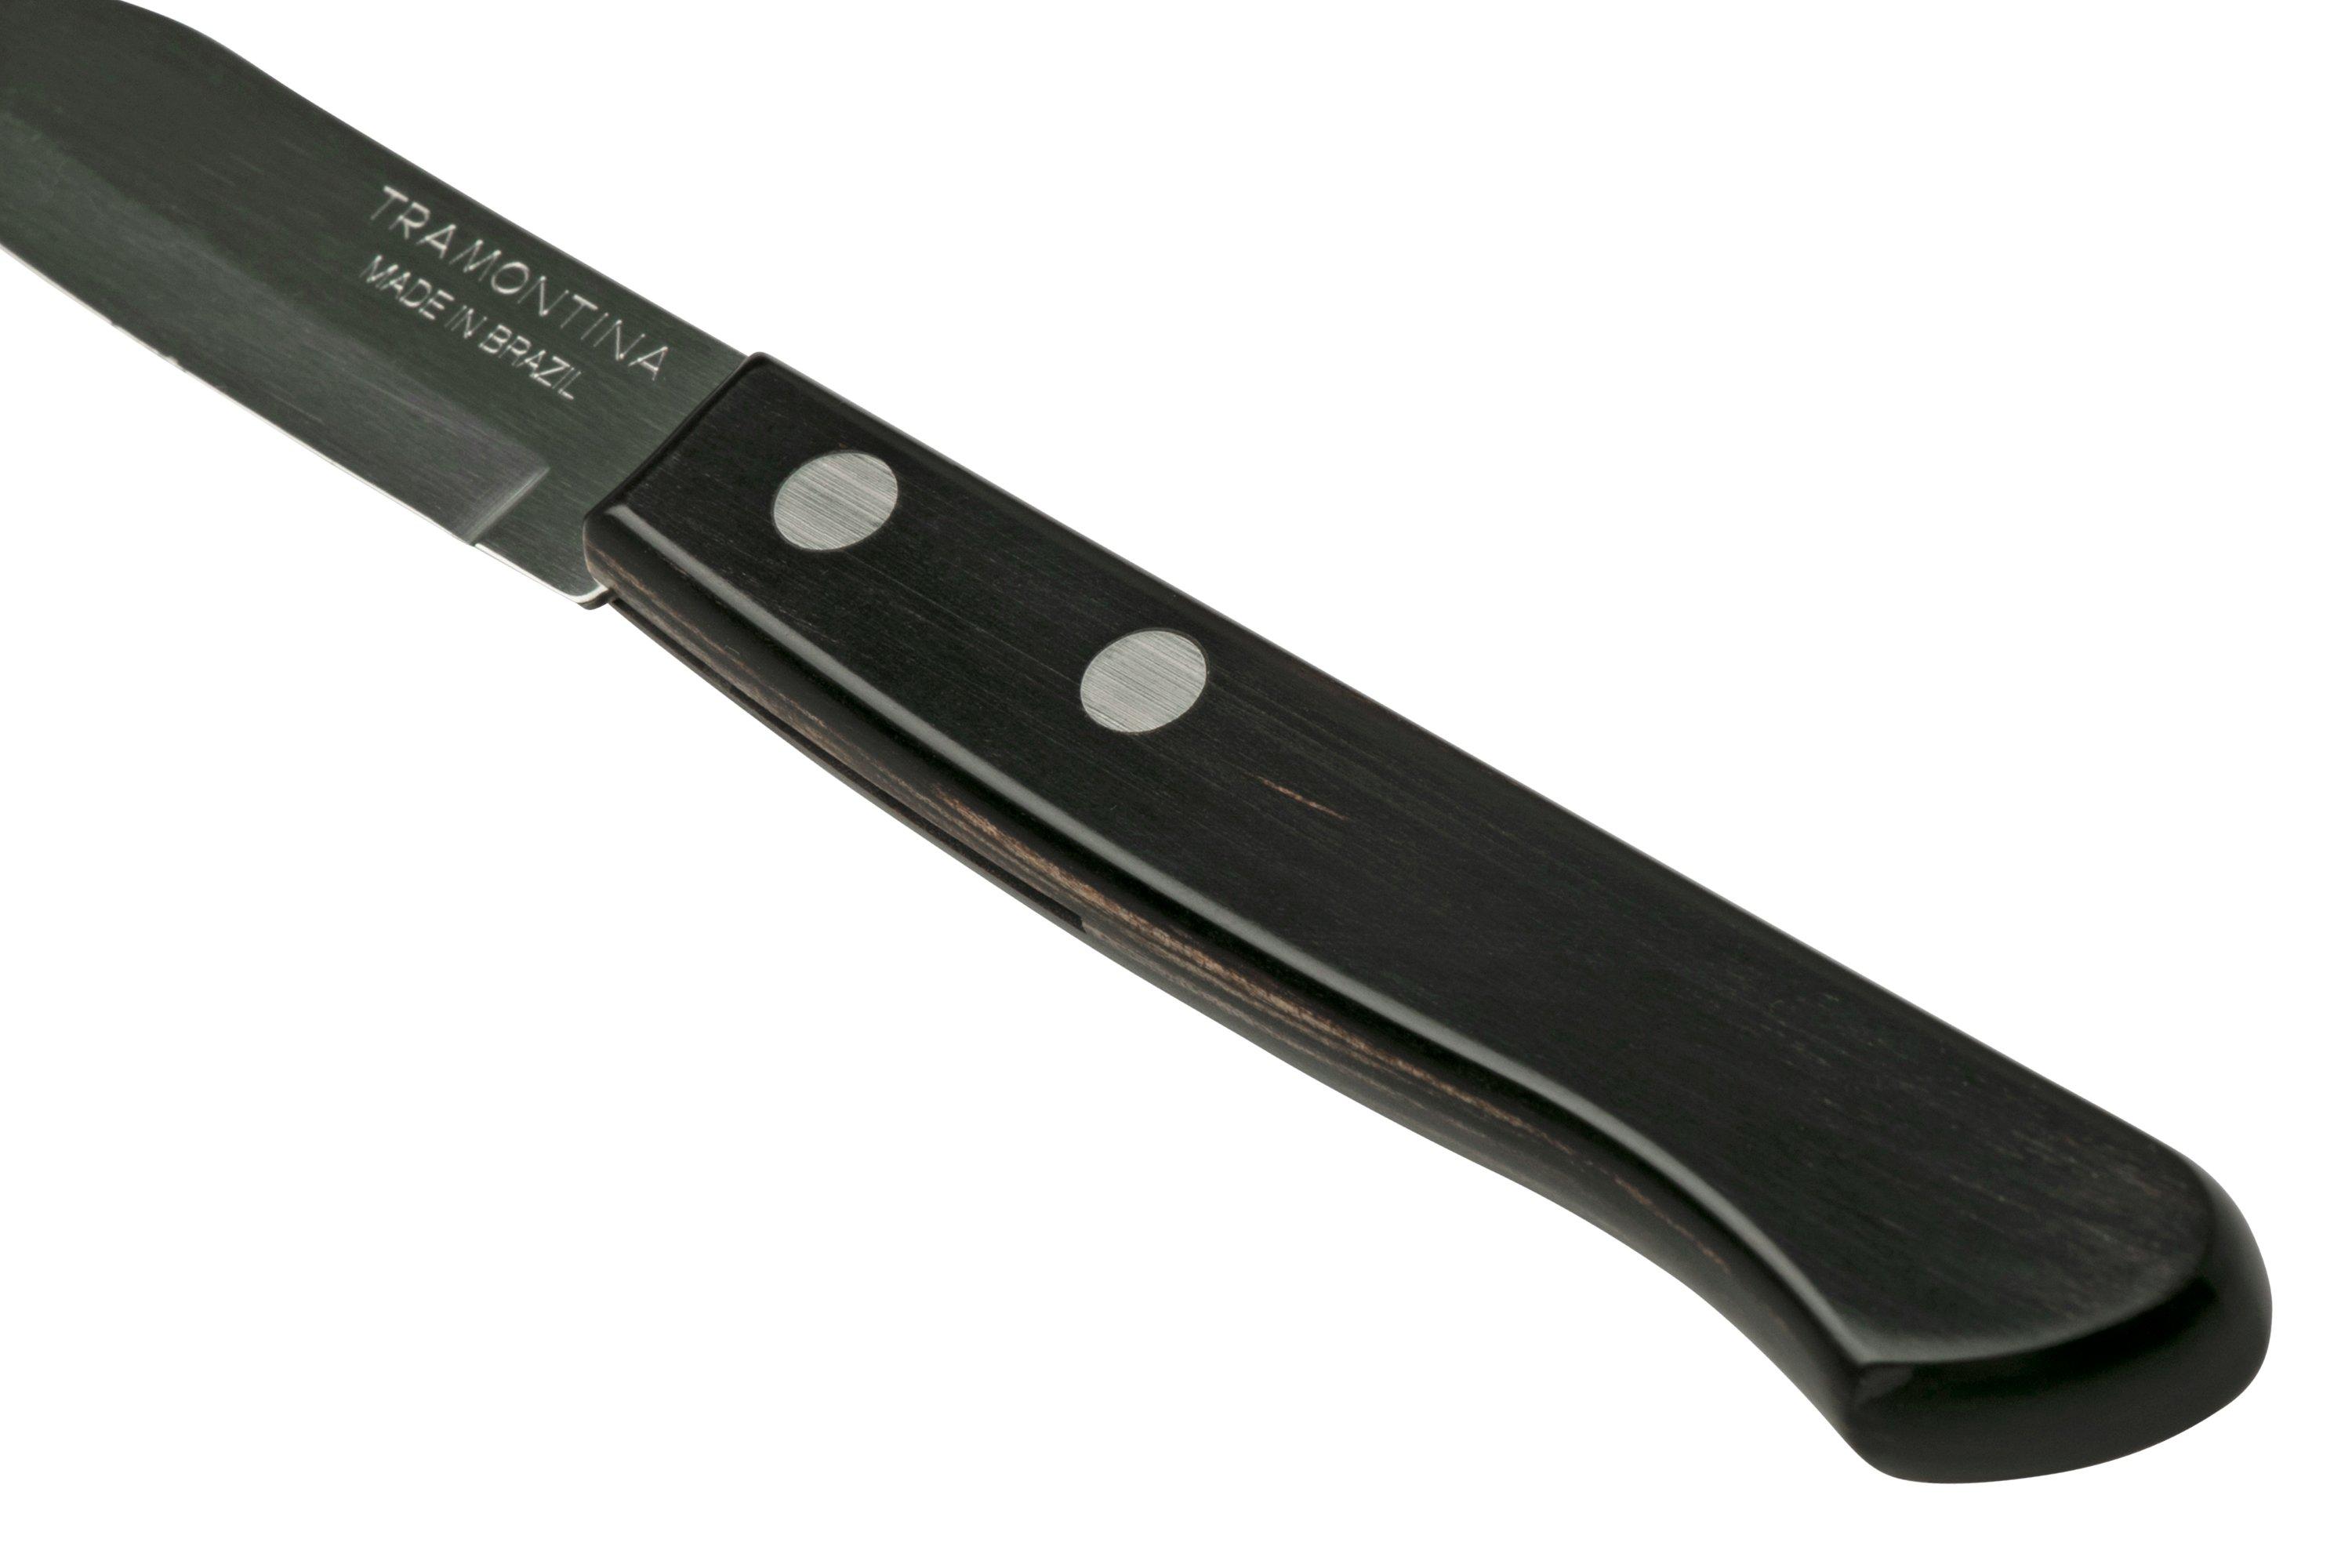 Tramontina Landhaus 29810-246 chef's knife 20 cm